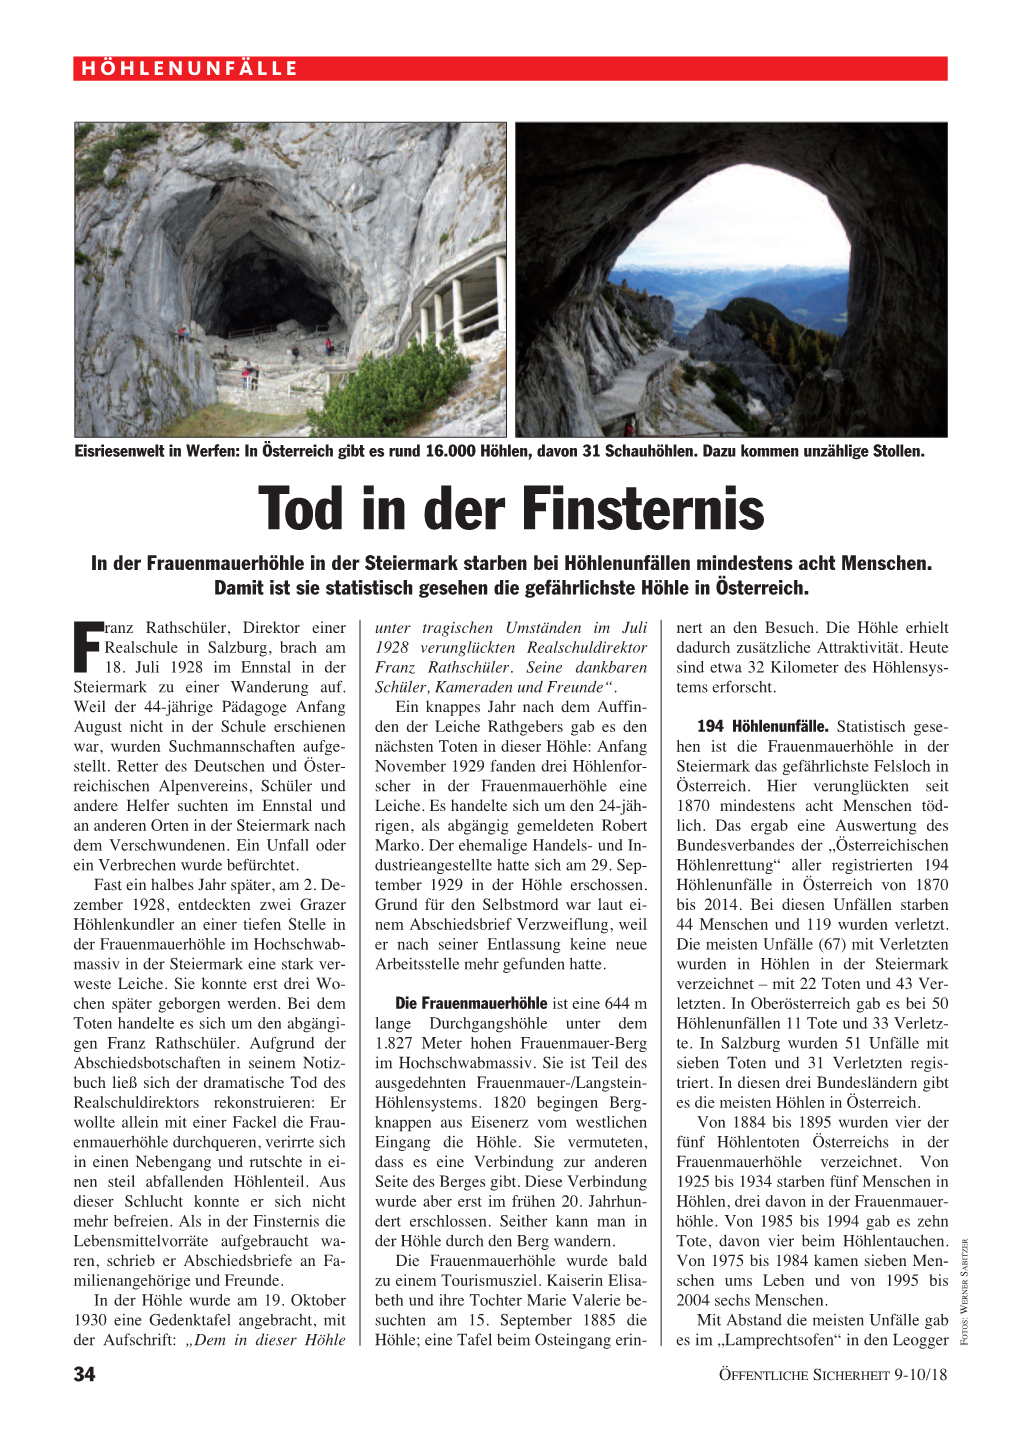 Tod in Der Finsternis in Der Frauenmauerhöhle in Der Steiermark Starben Bei Höhlenunfällen Mindestens Acht Menschen